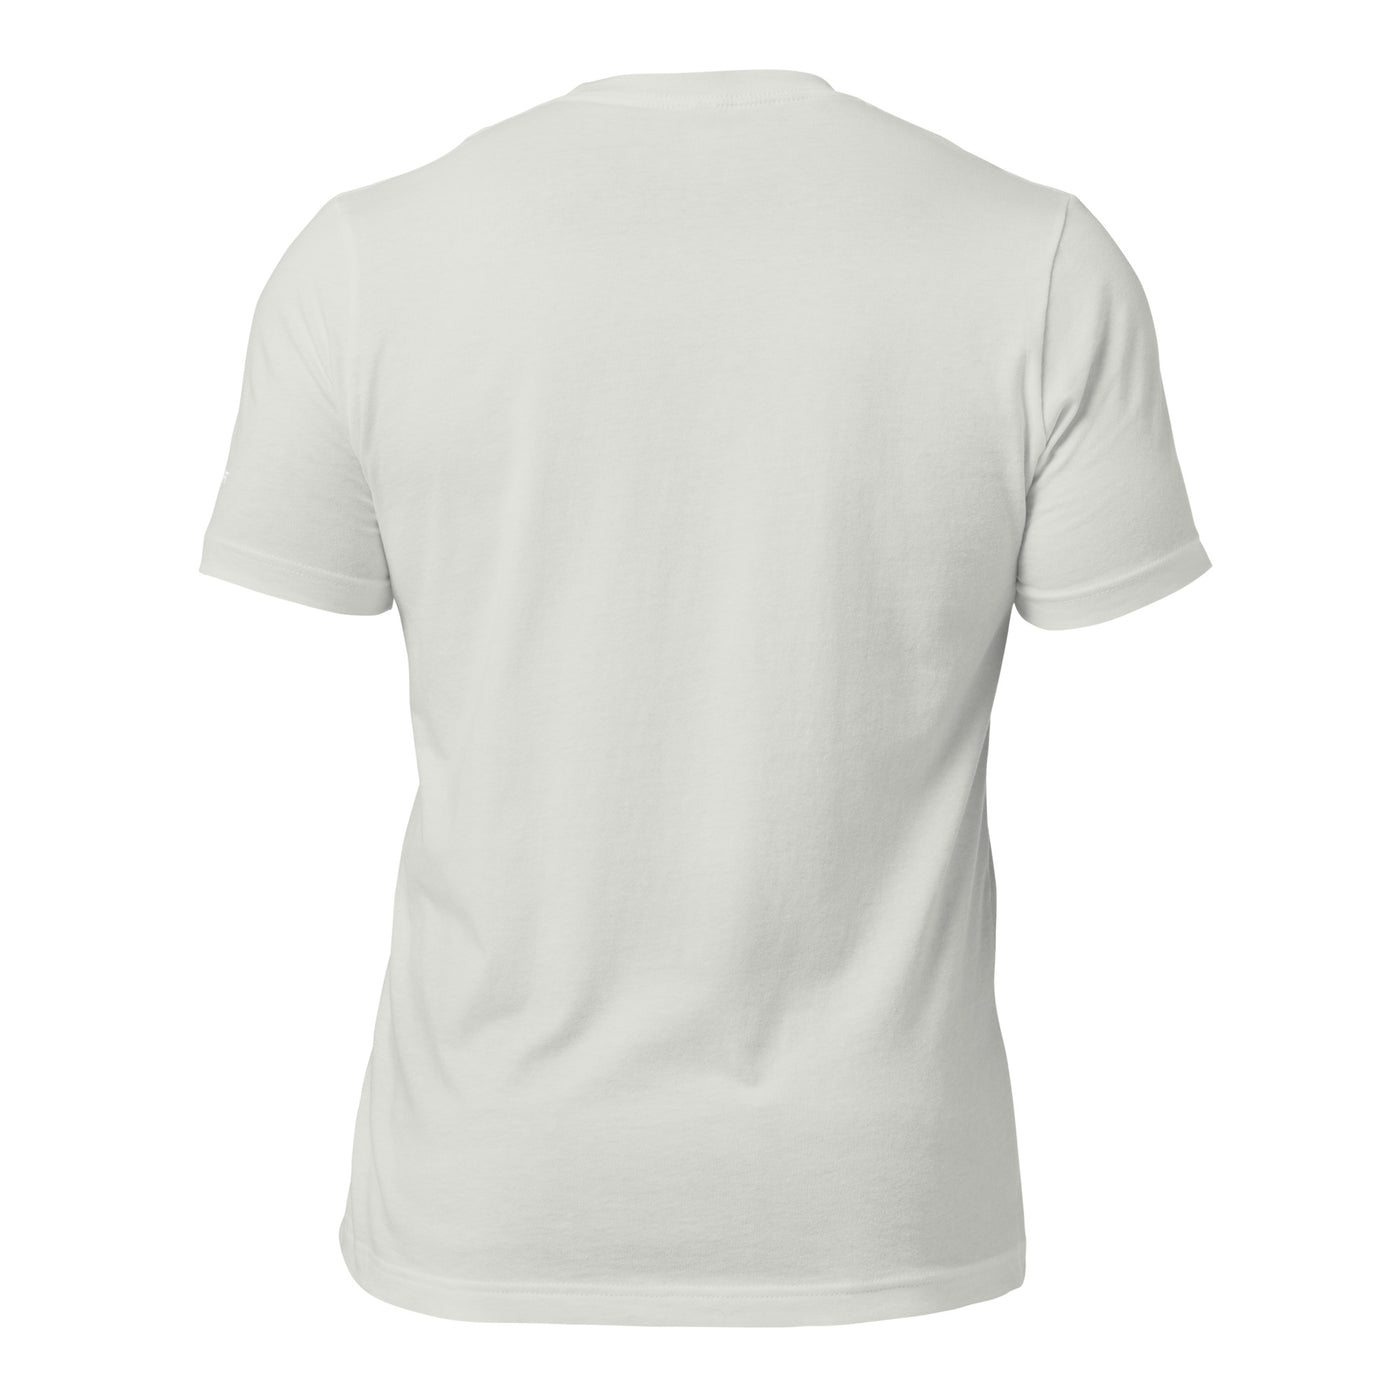 AI mode On - Unisex t-shirt